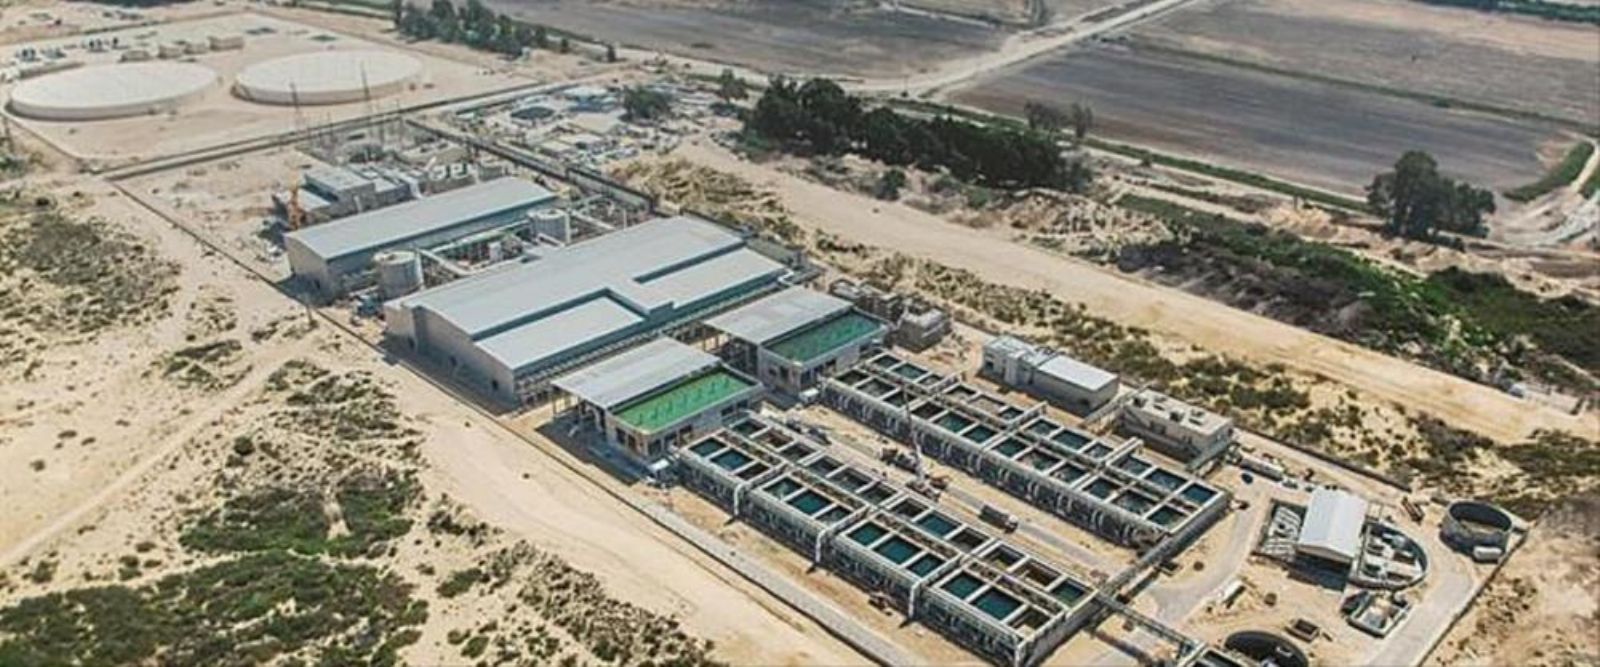 الاتفاق بين "إسرائيل" والأردن والإمارات على إقامة محطة لتوليد الكهرباء